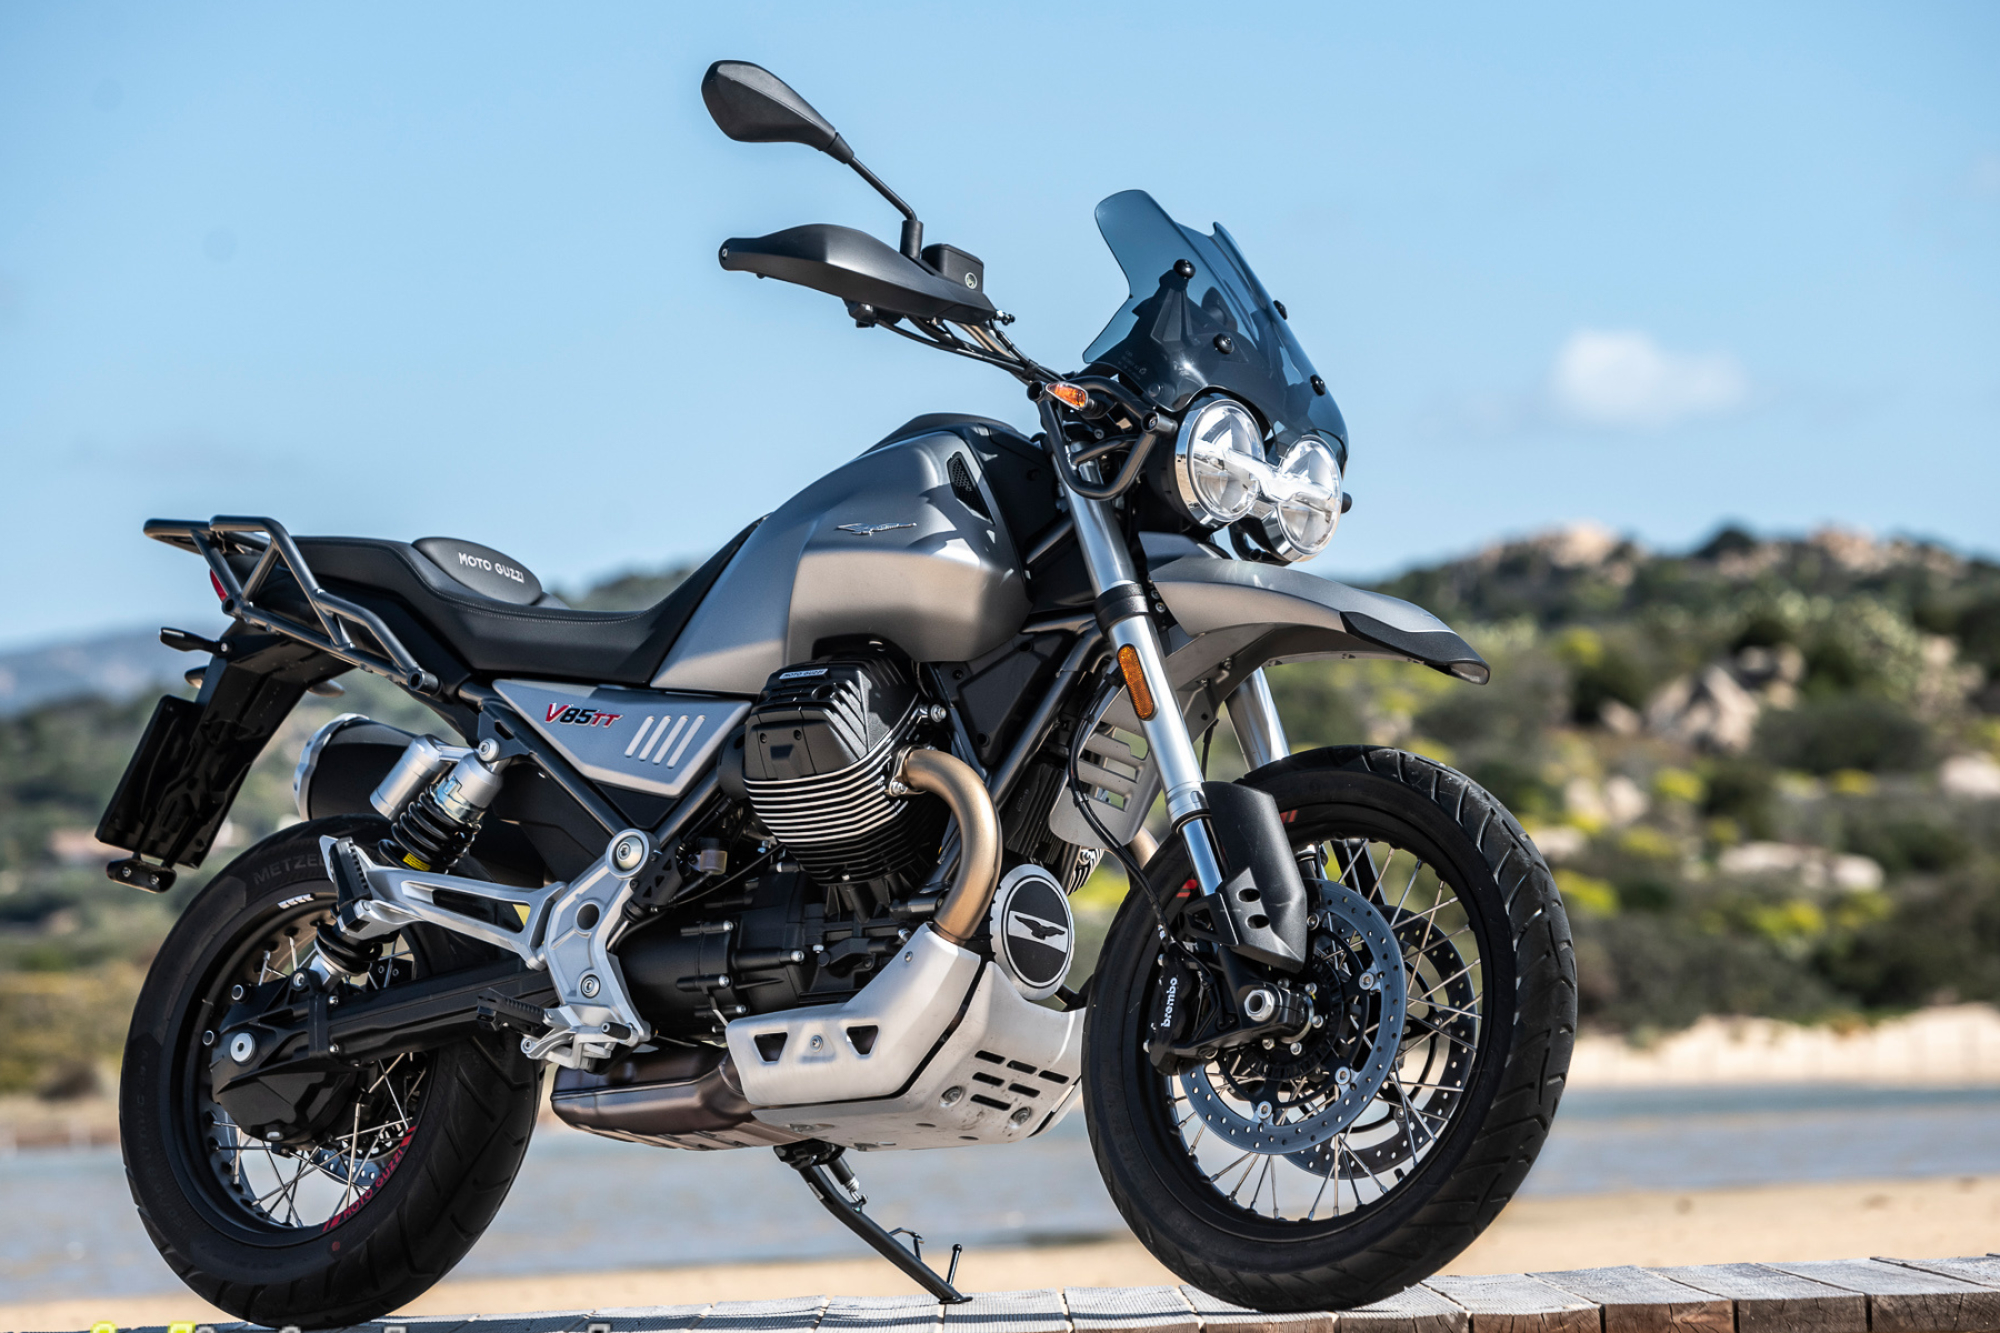 Moto Guzzi V85 TT, 2020 model, Swiss motorcycle information, 2000x1340 HD Desktop